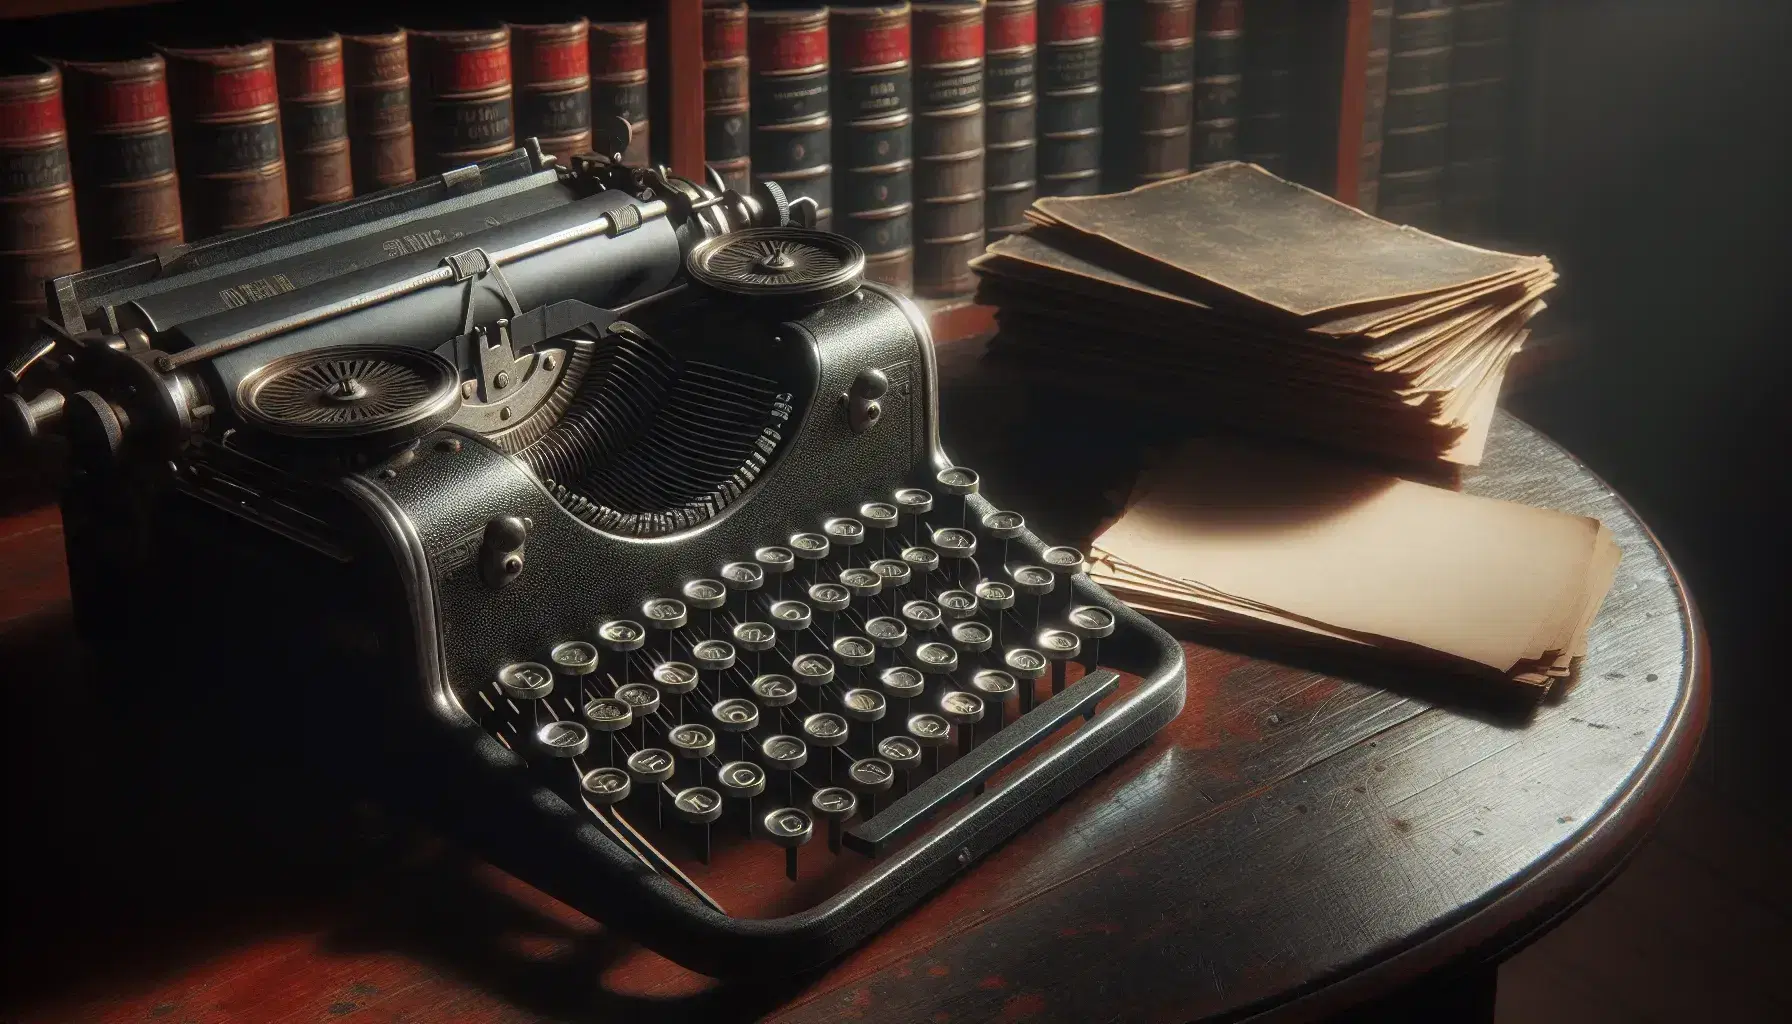 Máquina de escribir metálica antigua con teclas redondas sobre mesa de madera oscura y papeles al lado, estantería con libros encuadernados en cuero al fondo.